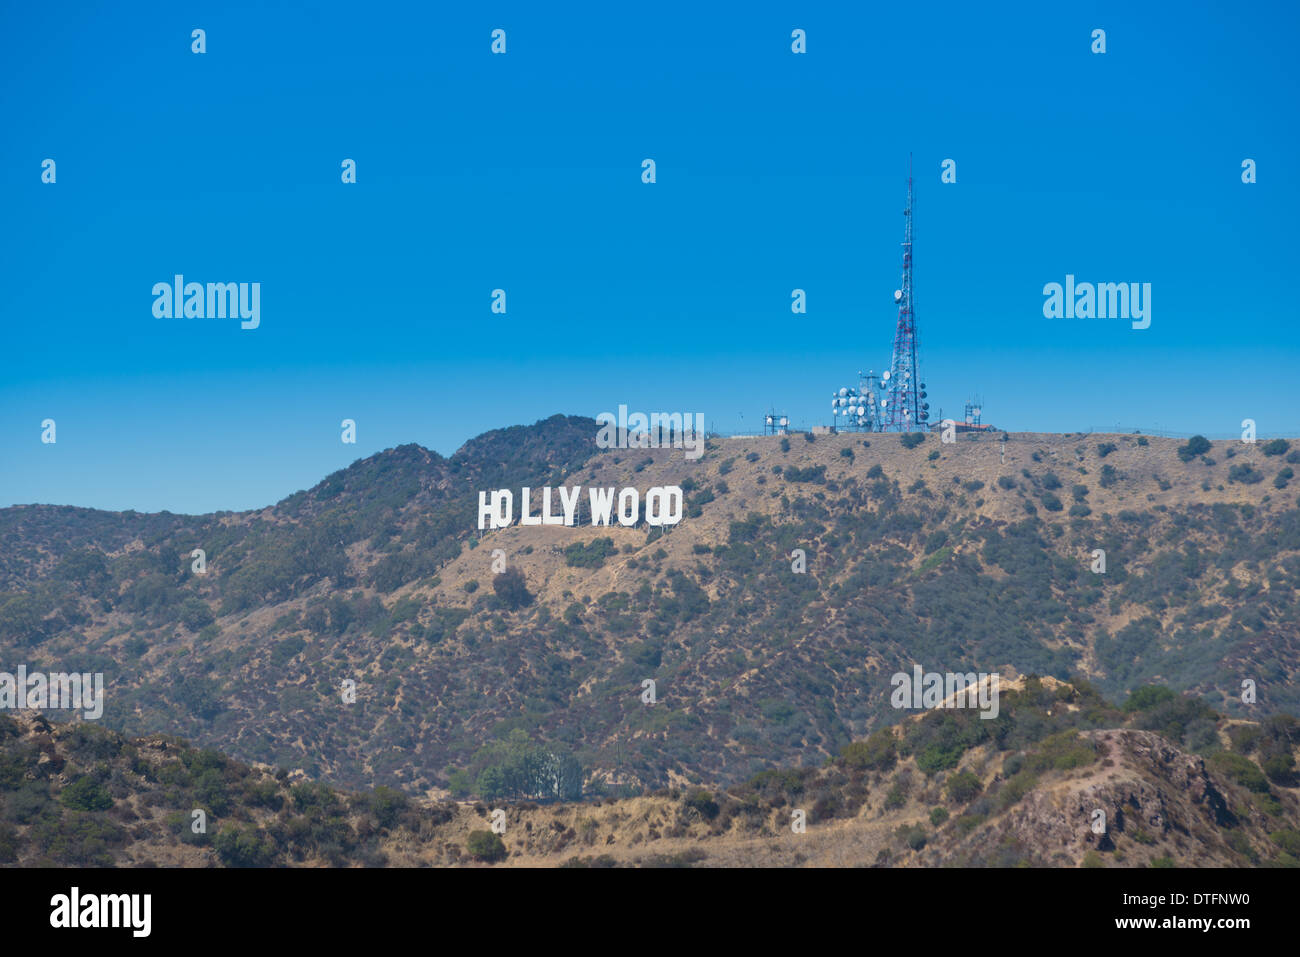 El letrero de Hollywood, Los Angeles, California Foto de stock